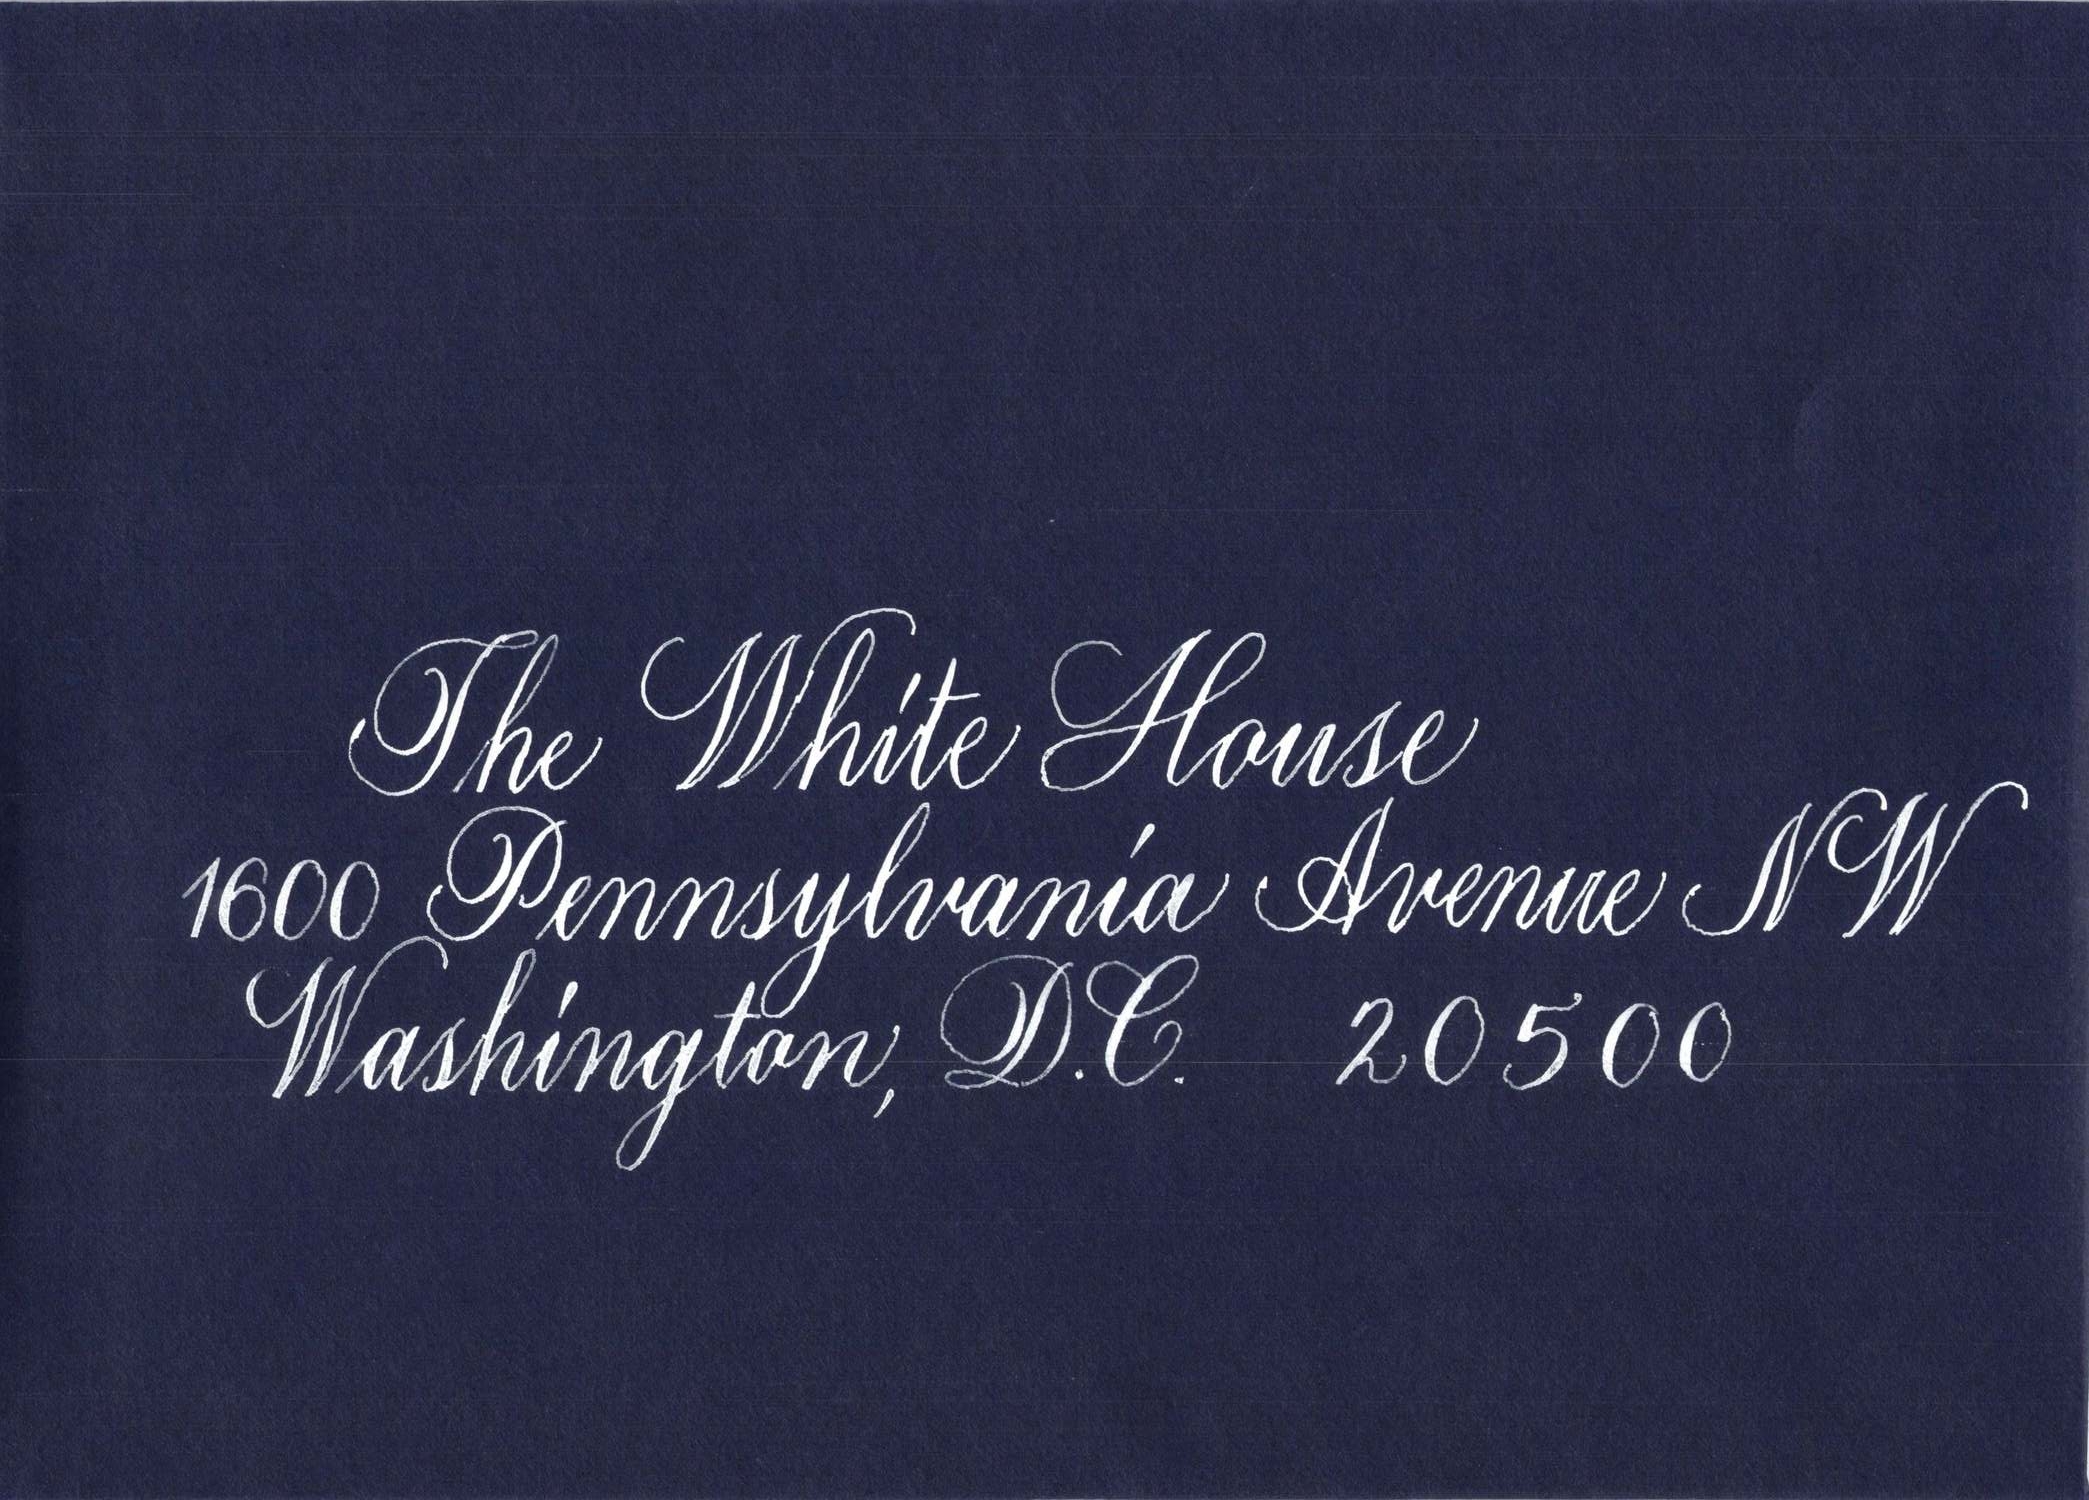 The White House Envelope.jpg